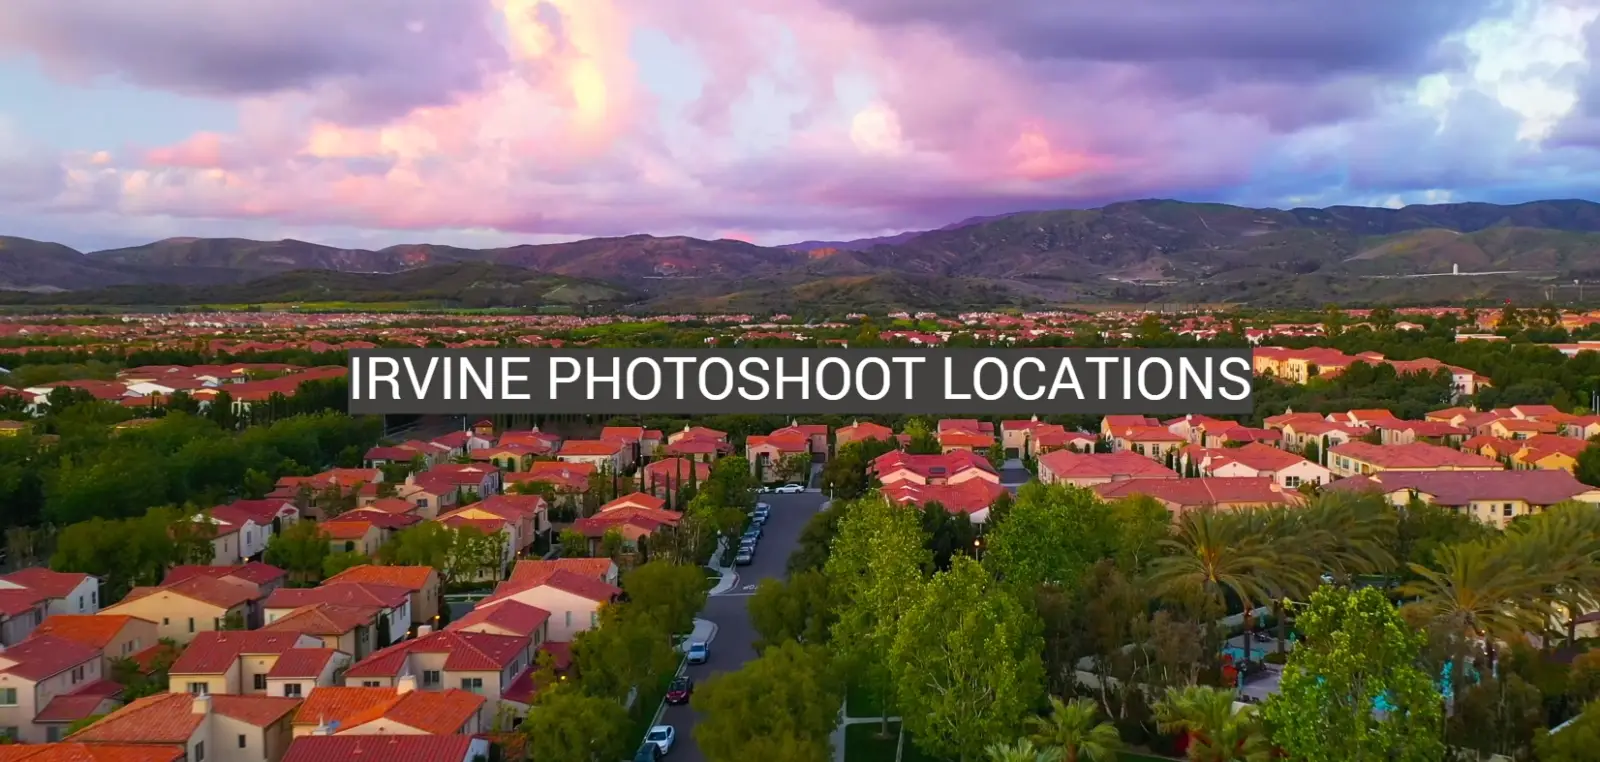 Irvine Photoshoot Locations